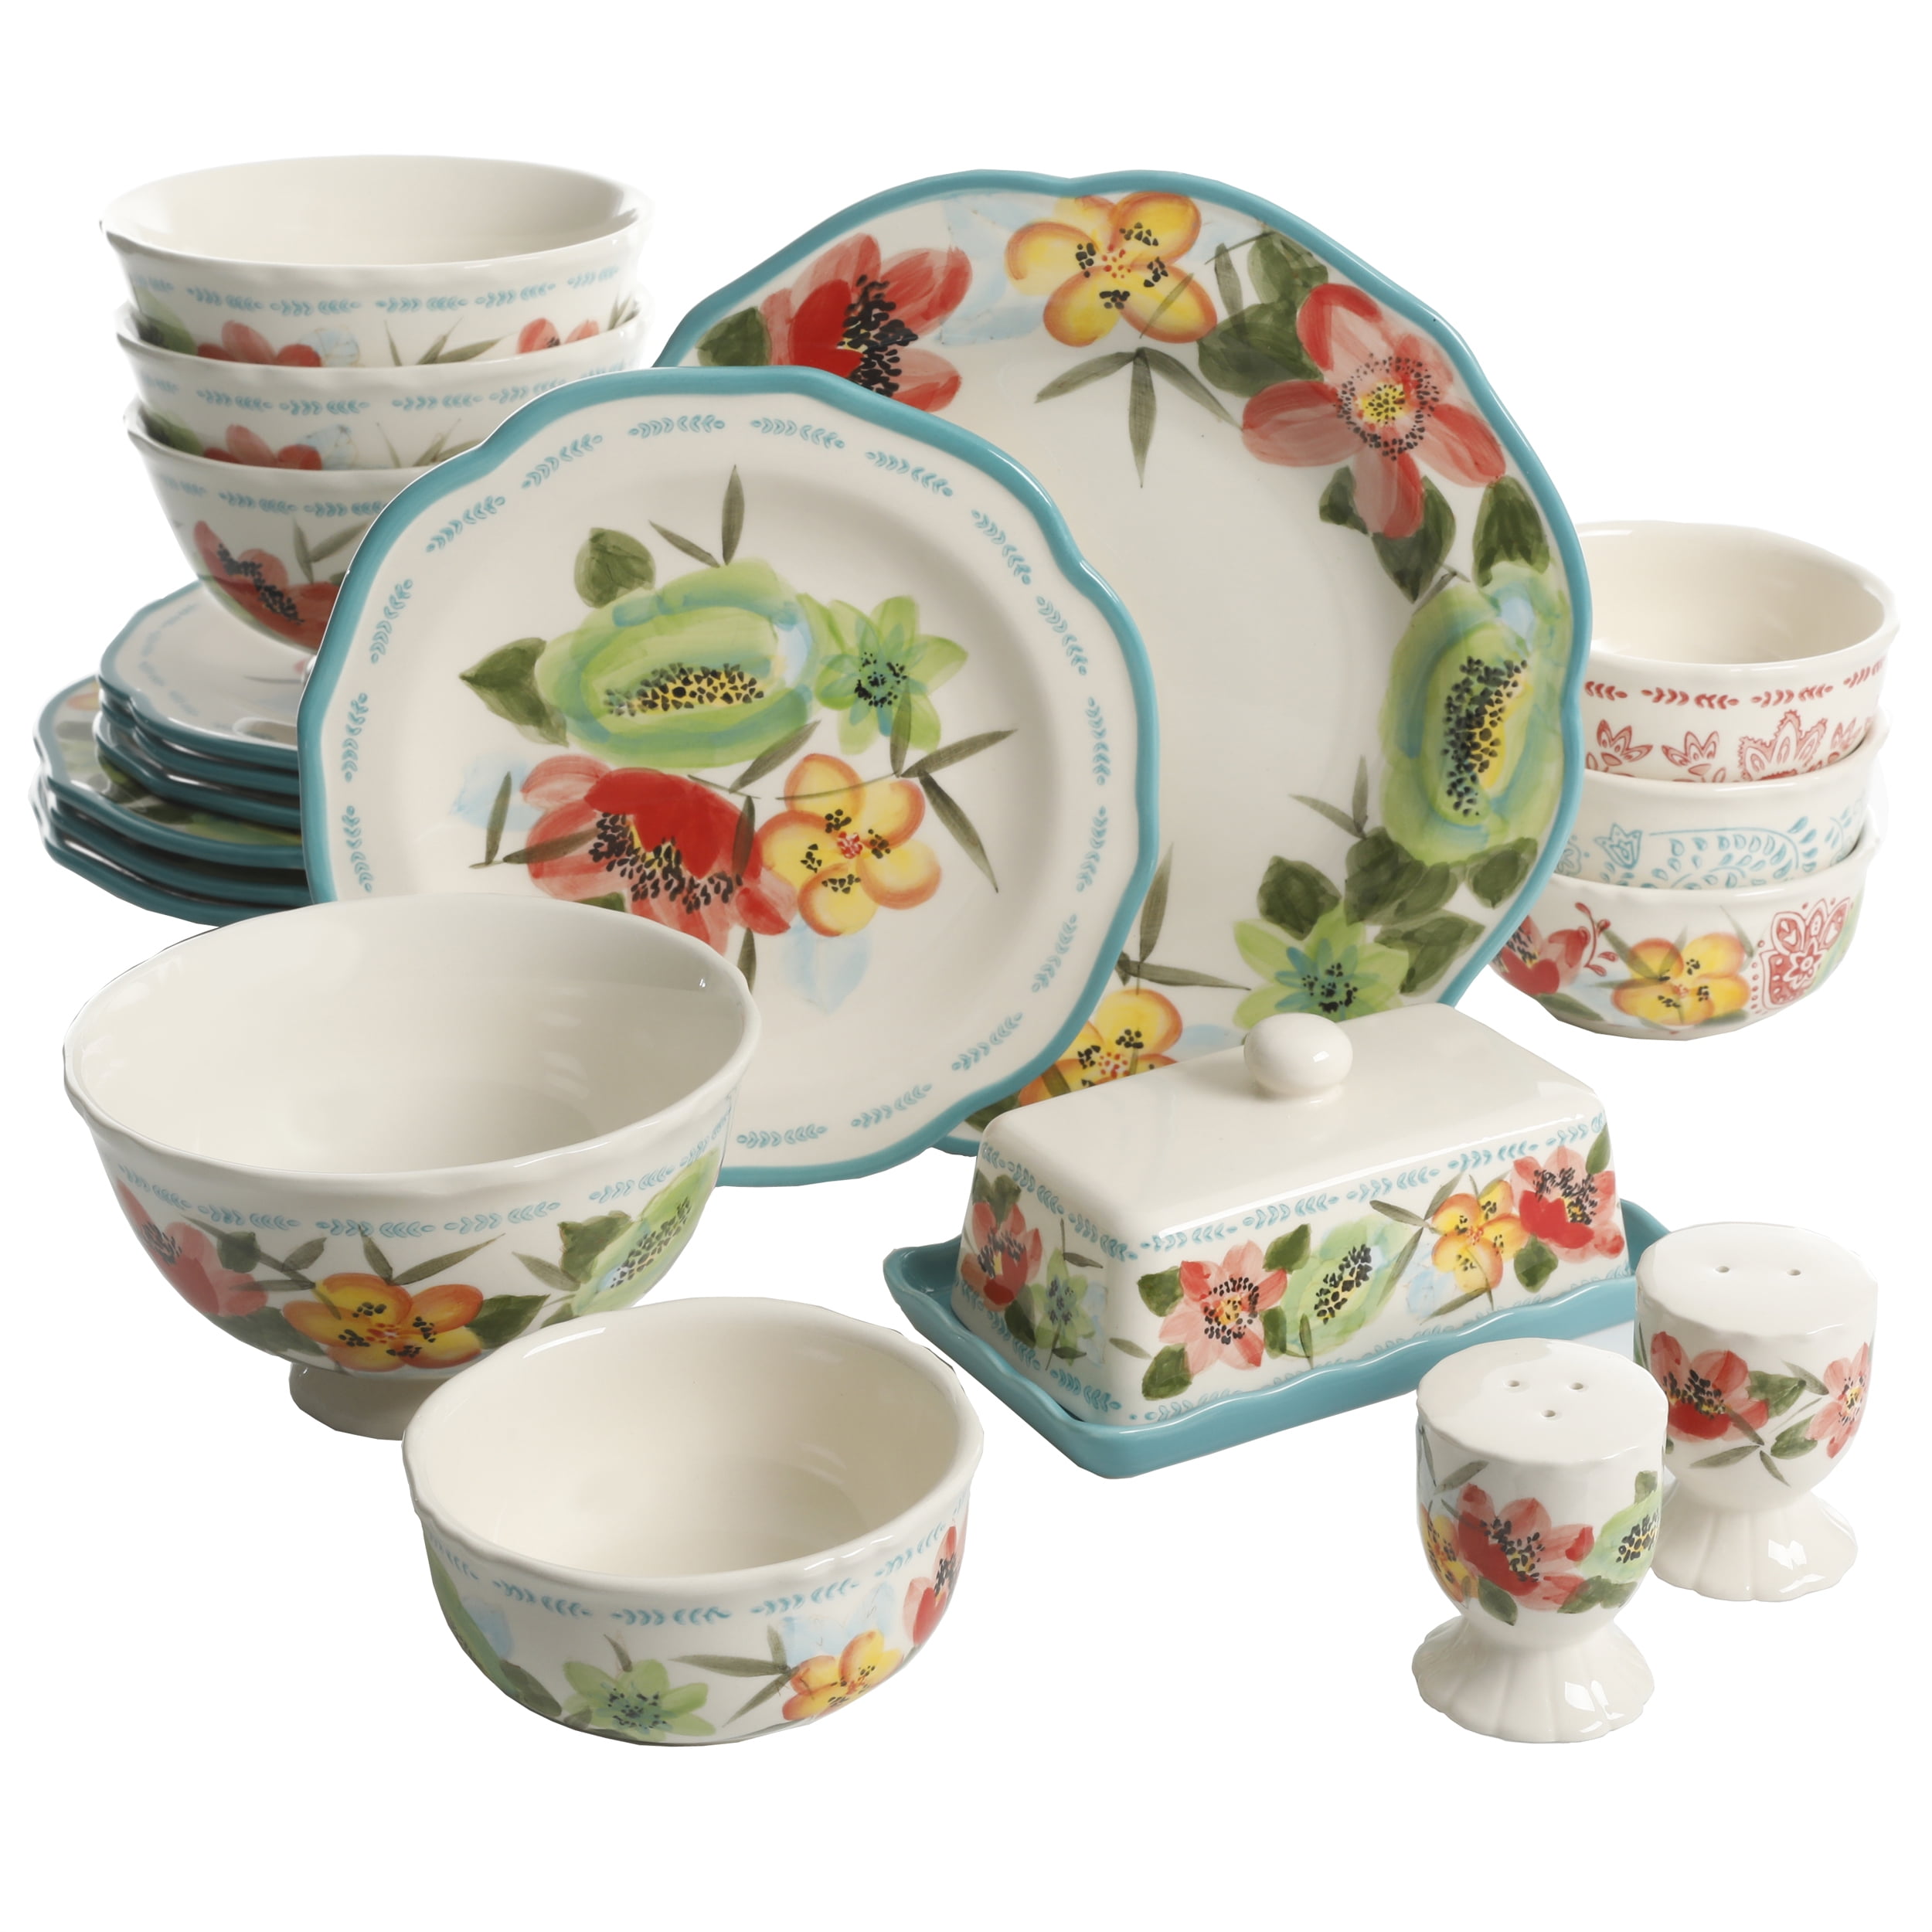 The Pioneer Woman Dinnerware Set, Vintage Bloom, 20 Pieces - Walmart.com